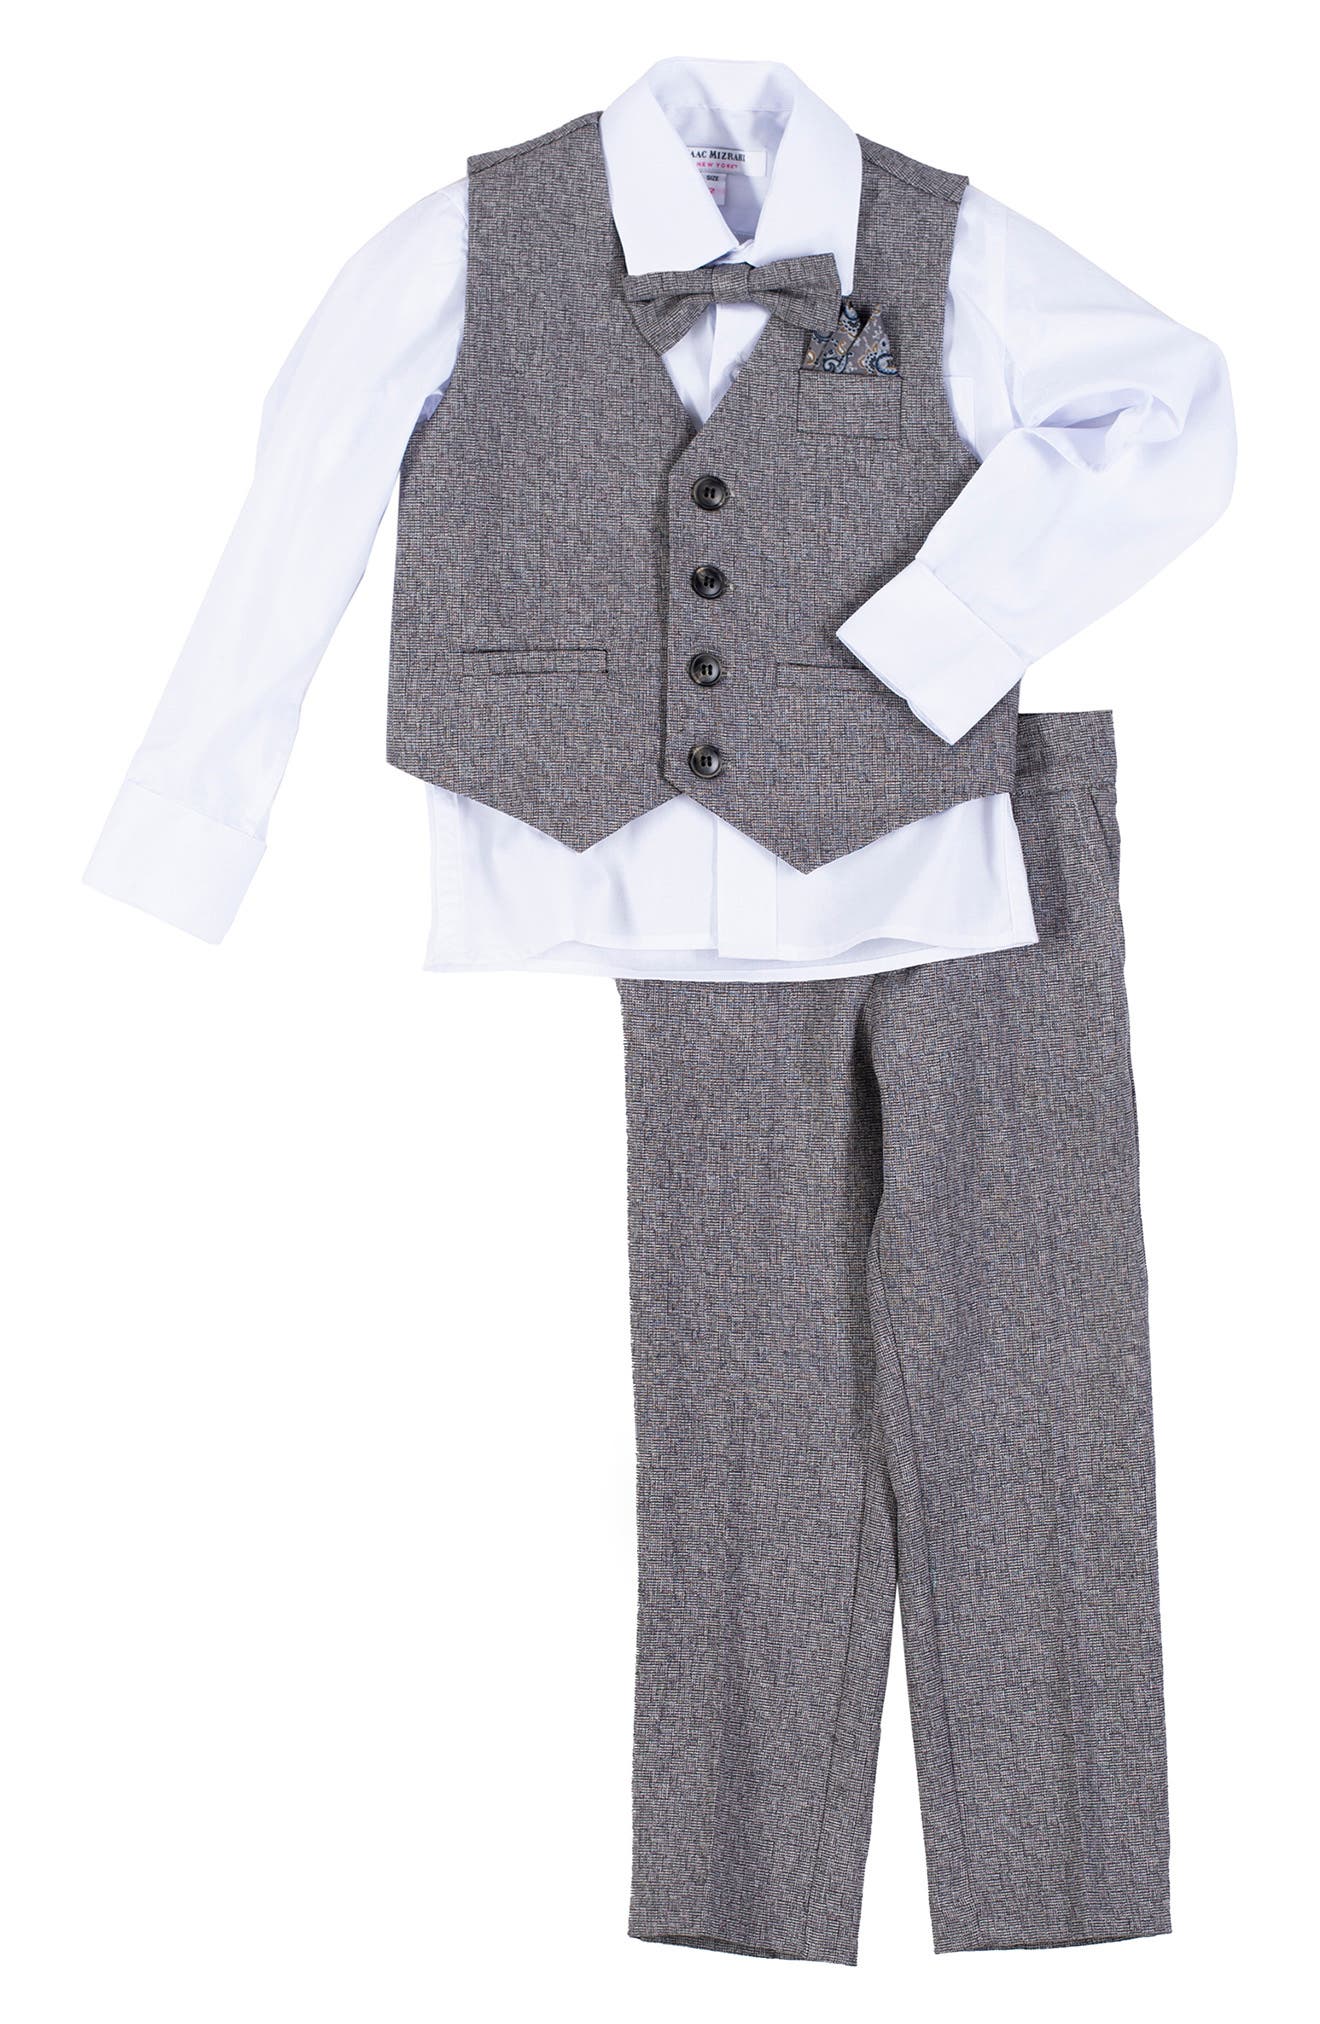 New Silver Gray Infant Boy & Toddler  Formal Bowtie Hat Vest shorts Suit  0M 4T 